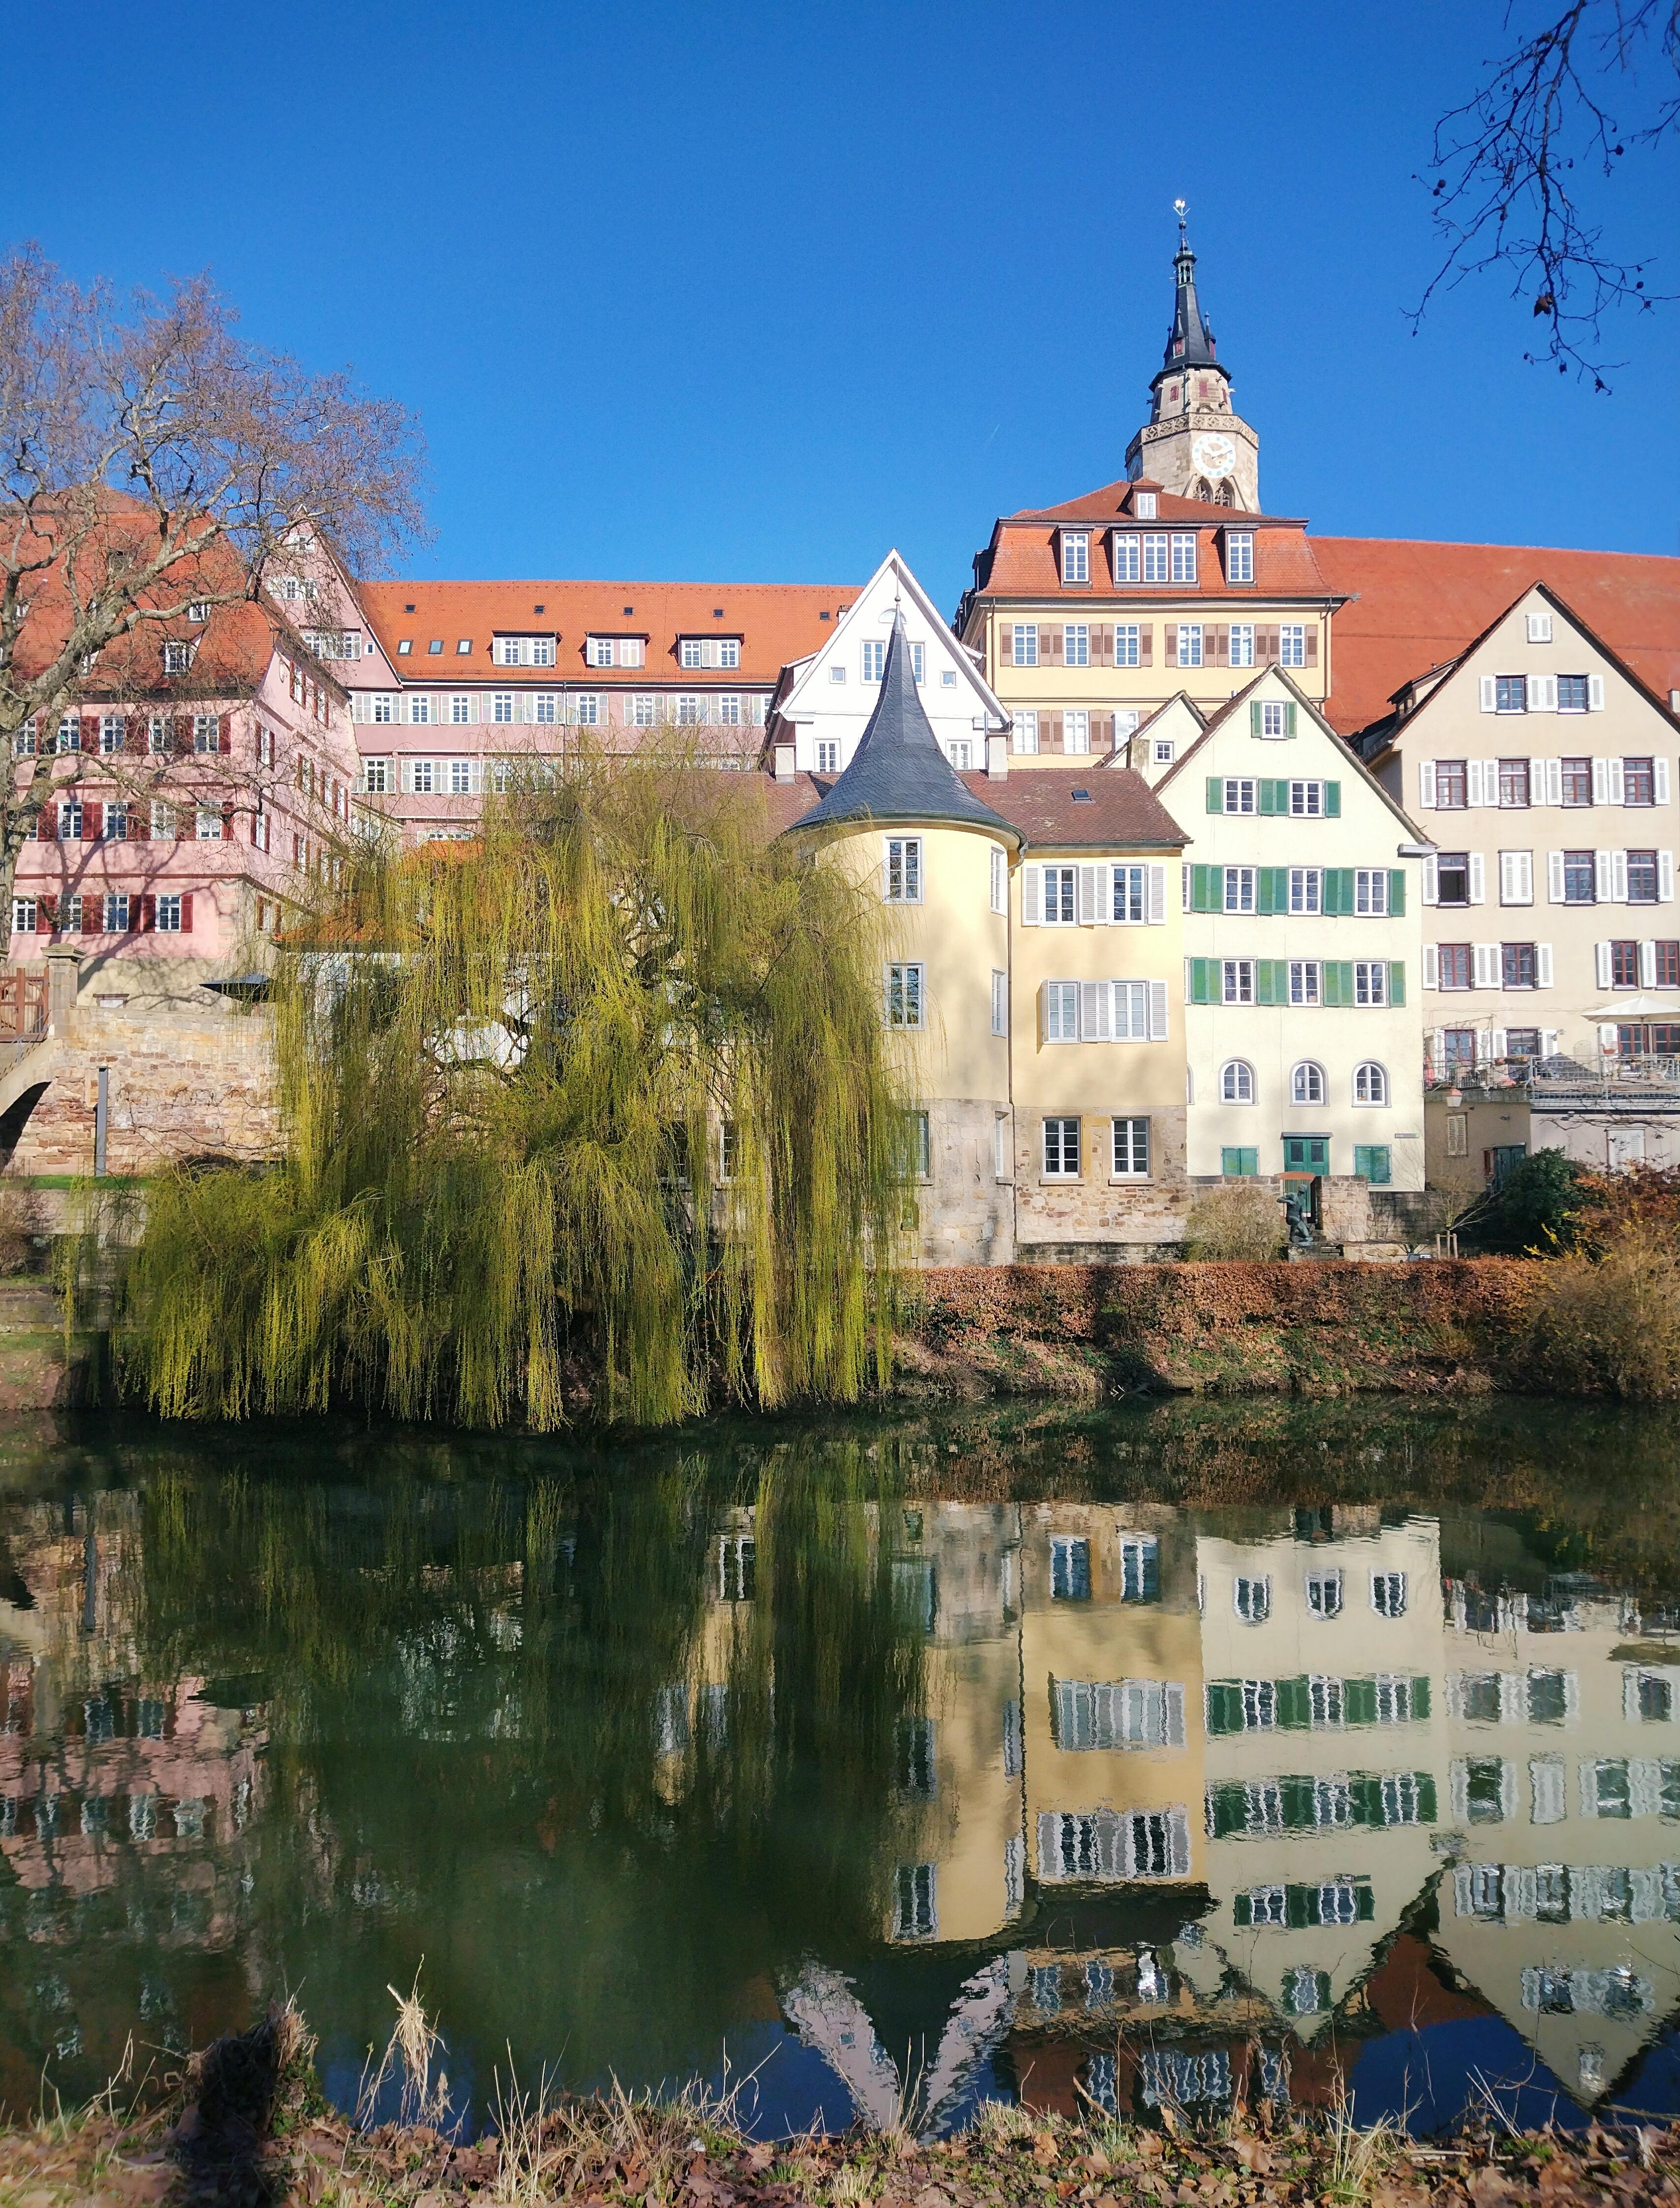 Tübingen ❤️
#tübingen #frühling #ausflug